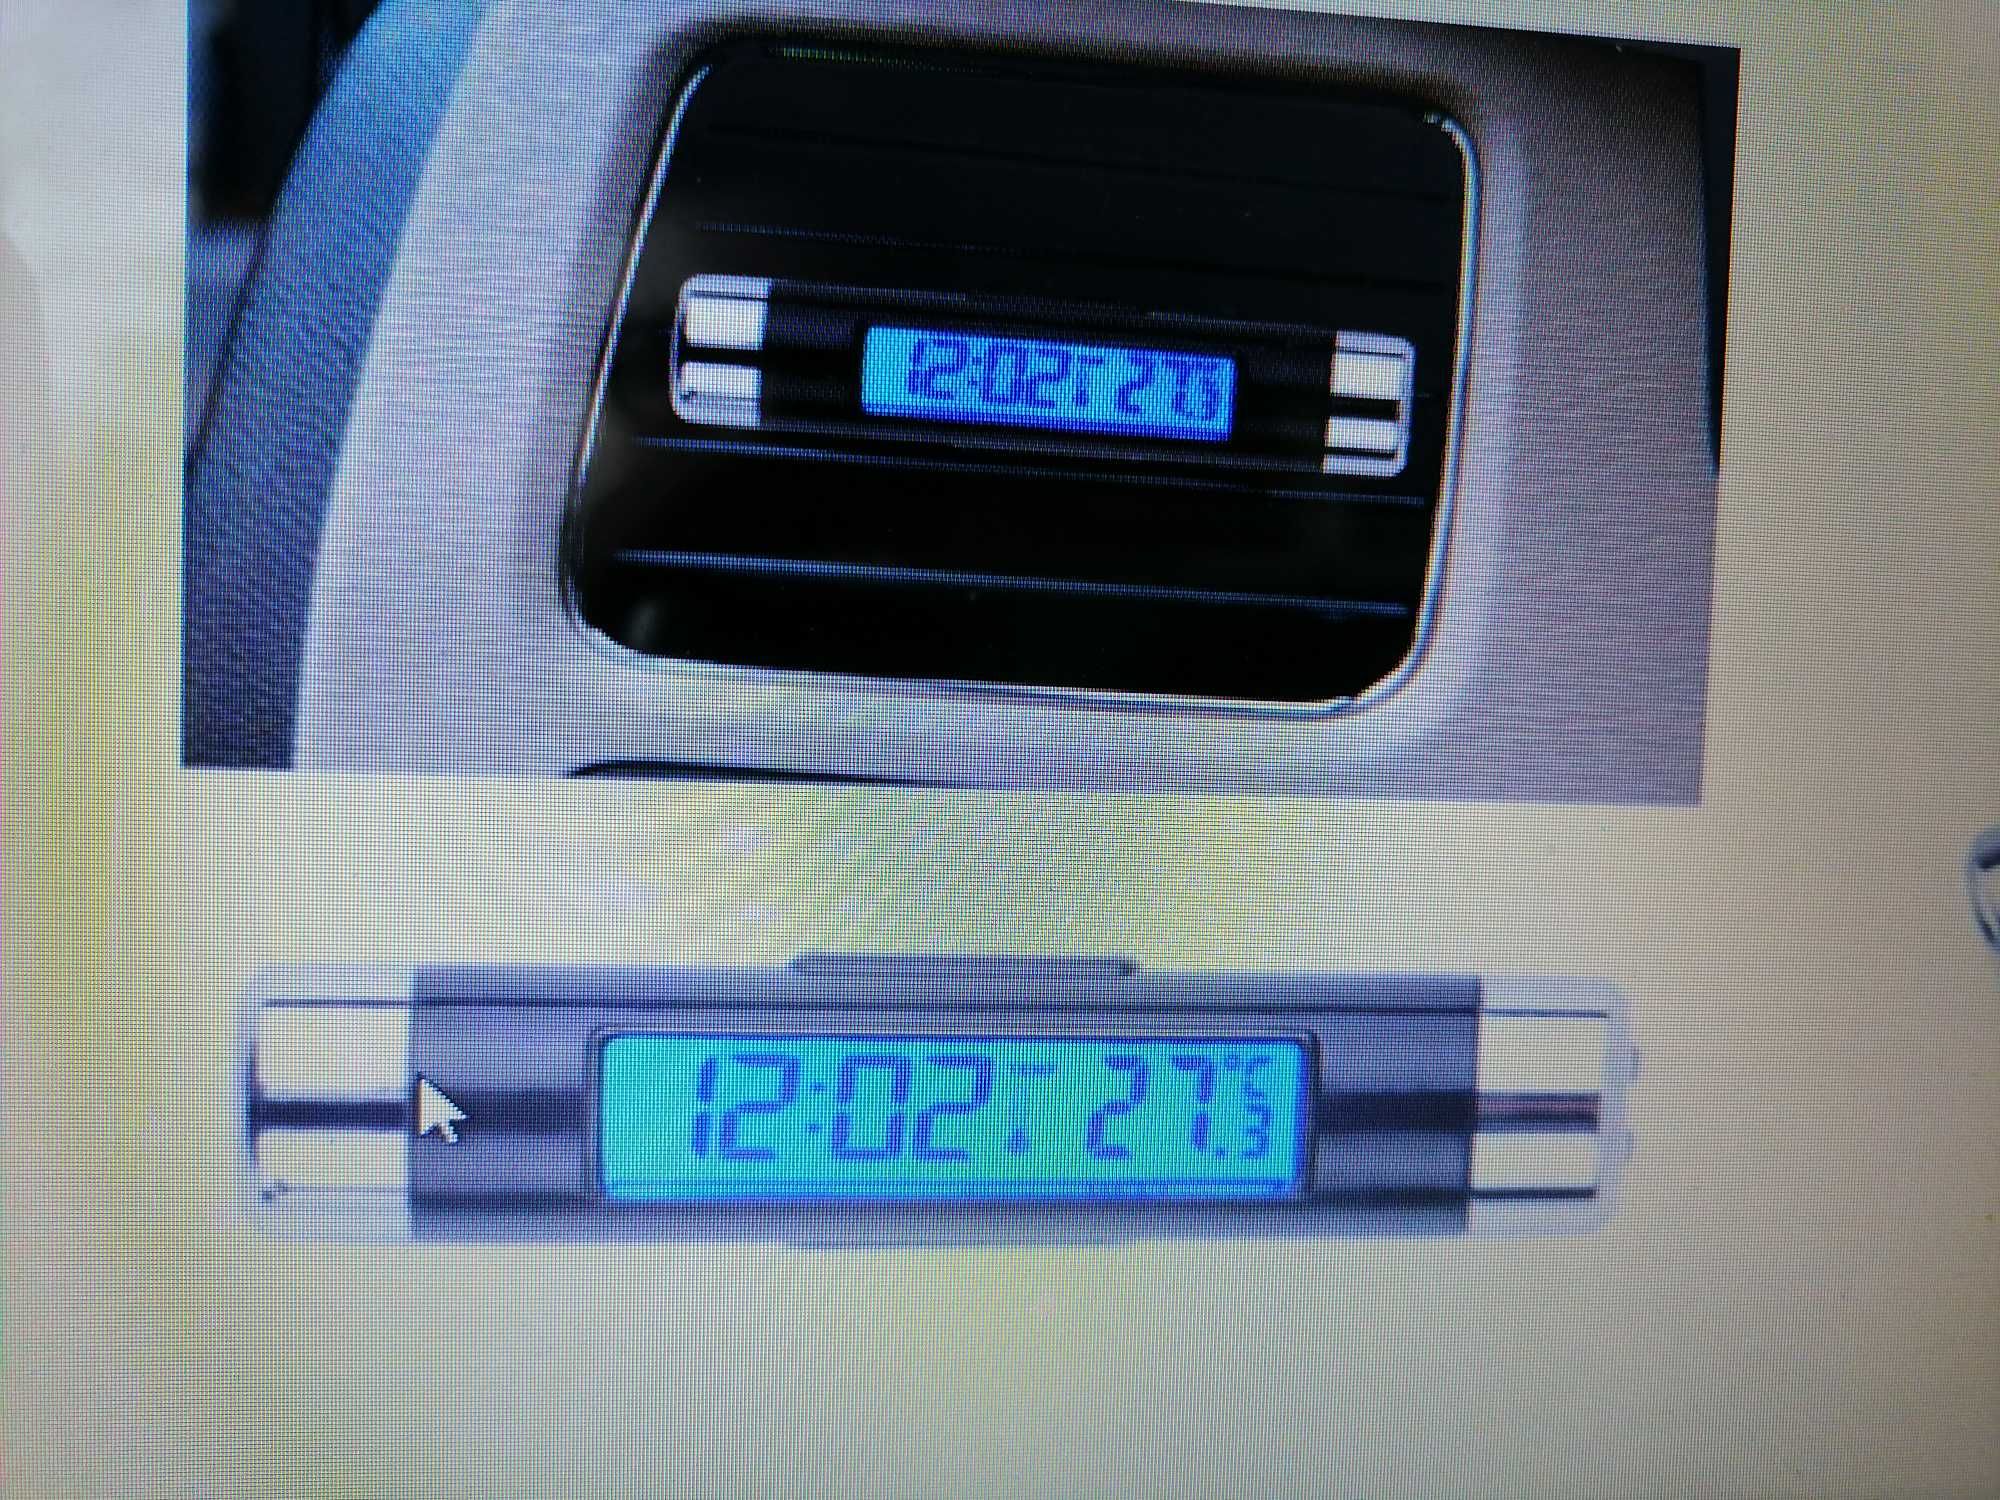 Podświetlany Zegarek ,Termometr Samochodowy i nie tylko .LCD